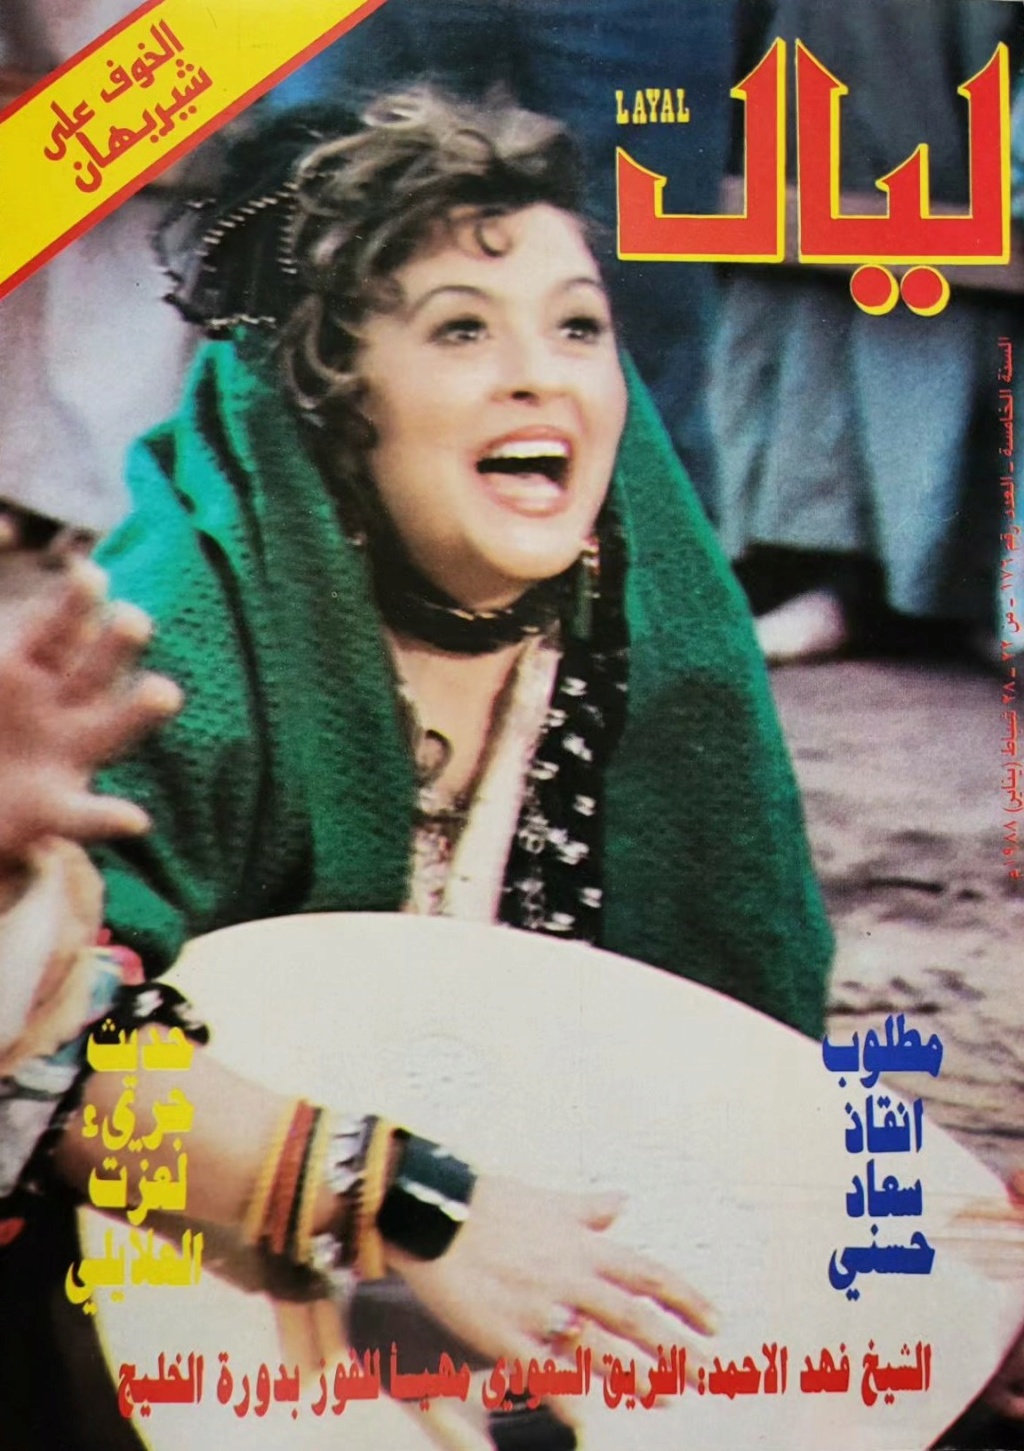 1988 - مقال صحفي : مطلوب انقاذ سعاد حسني 1988 م 143